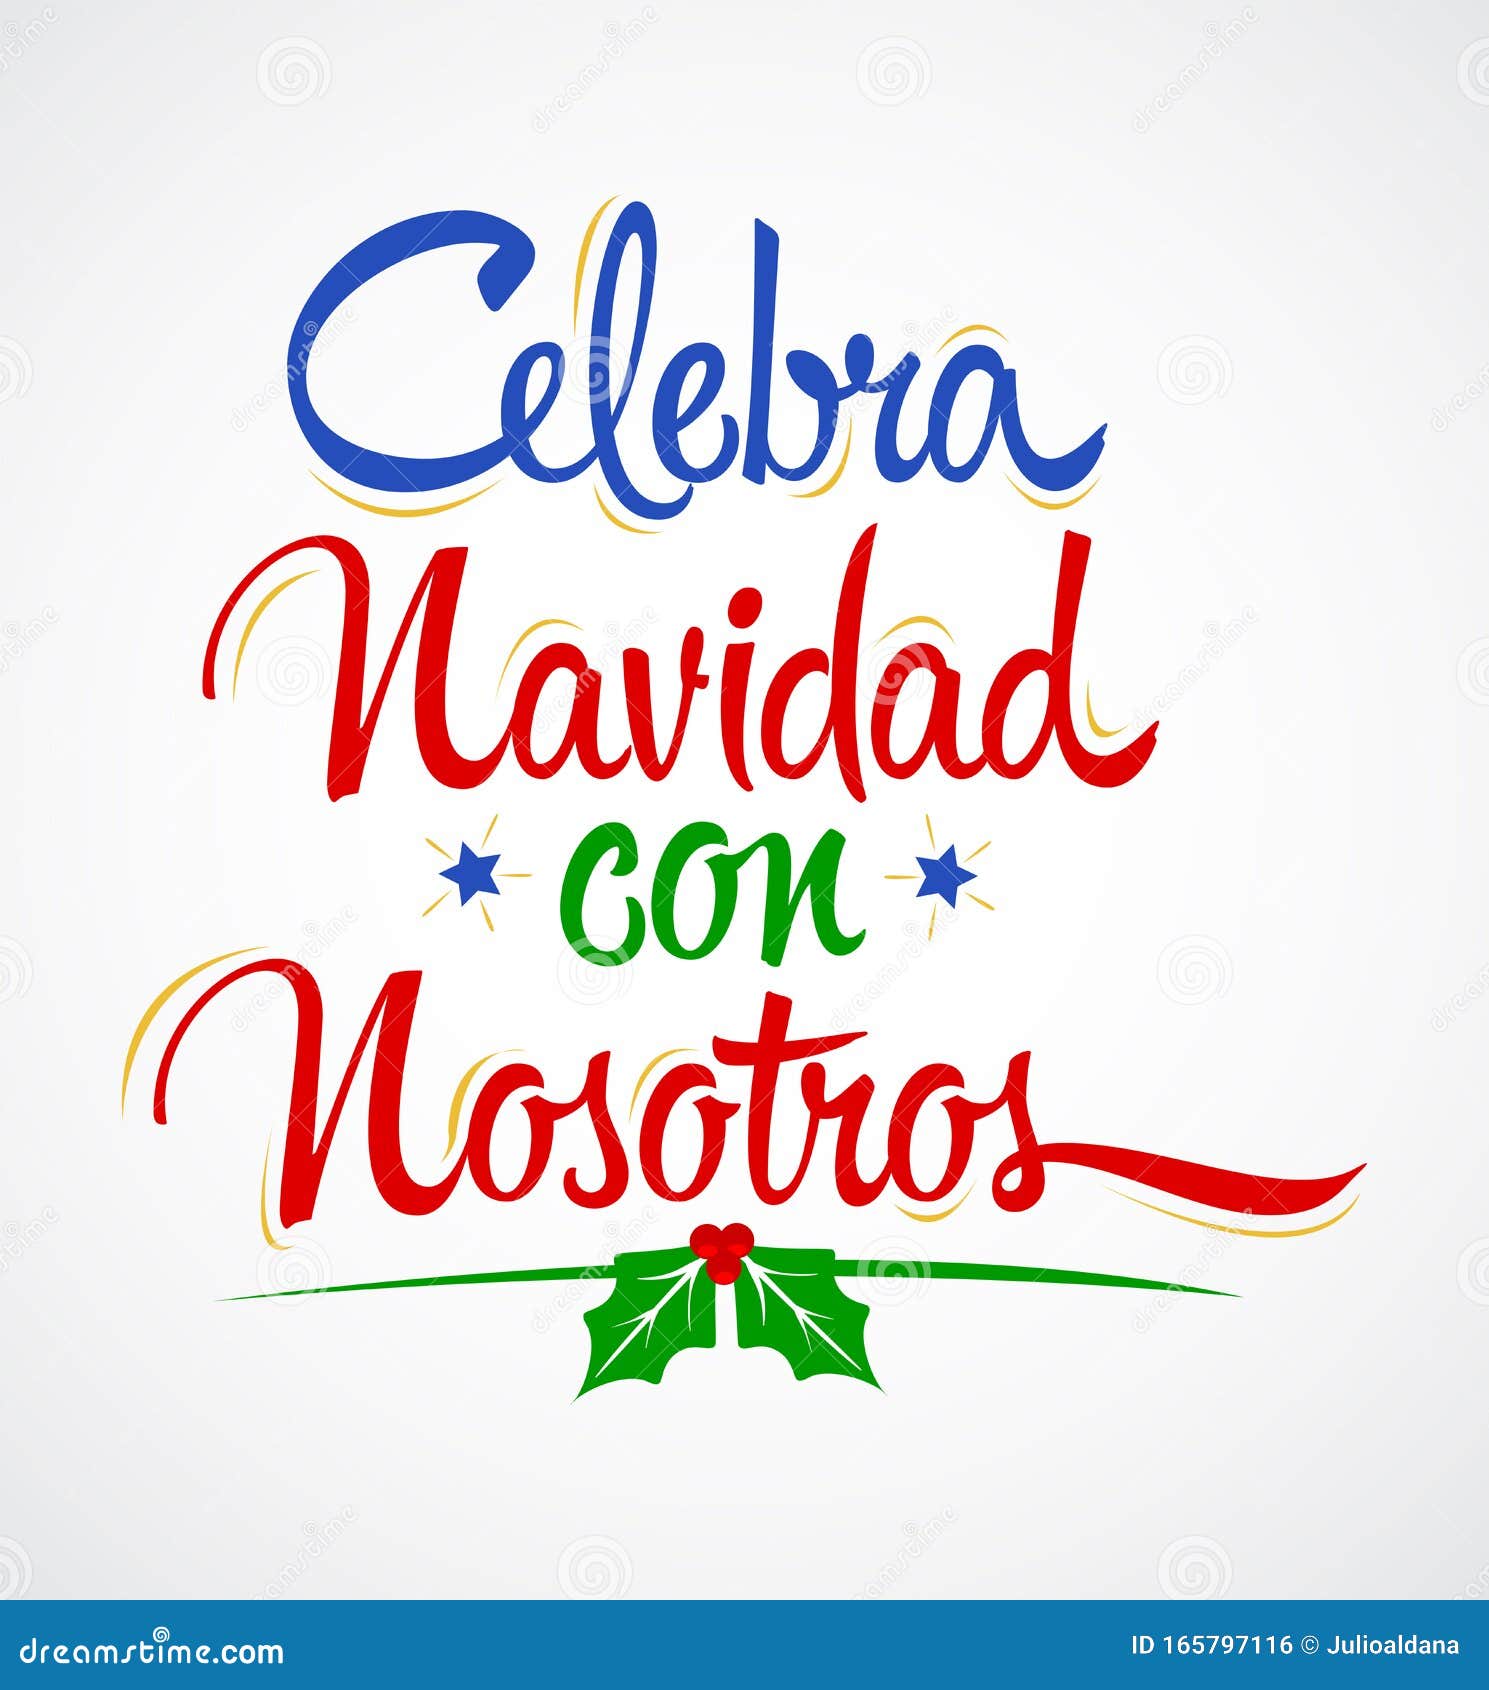 Celebra Navidad con Nosotros celebra il Natale con la creazione di un vettore di testo spagnolo. Celebra Navidad con Nosotros celebra il Natale Con gli Stati Uniti sono disponibili alcuni passaggi di progettazione per vettori di testo spagnoli